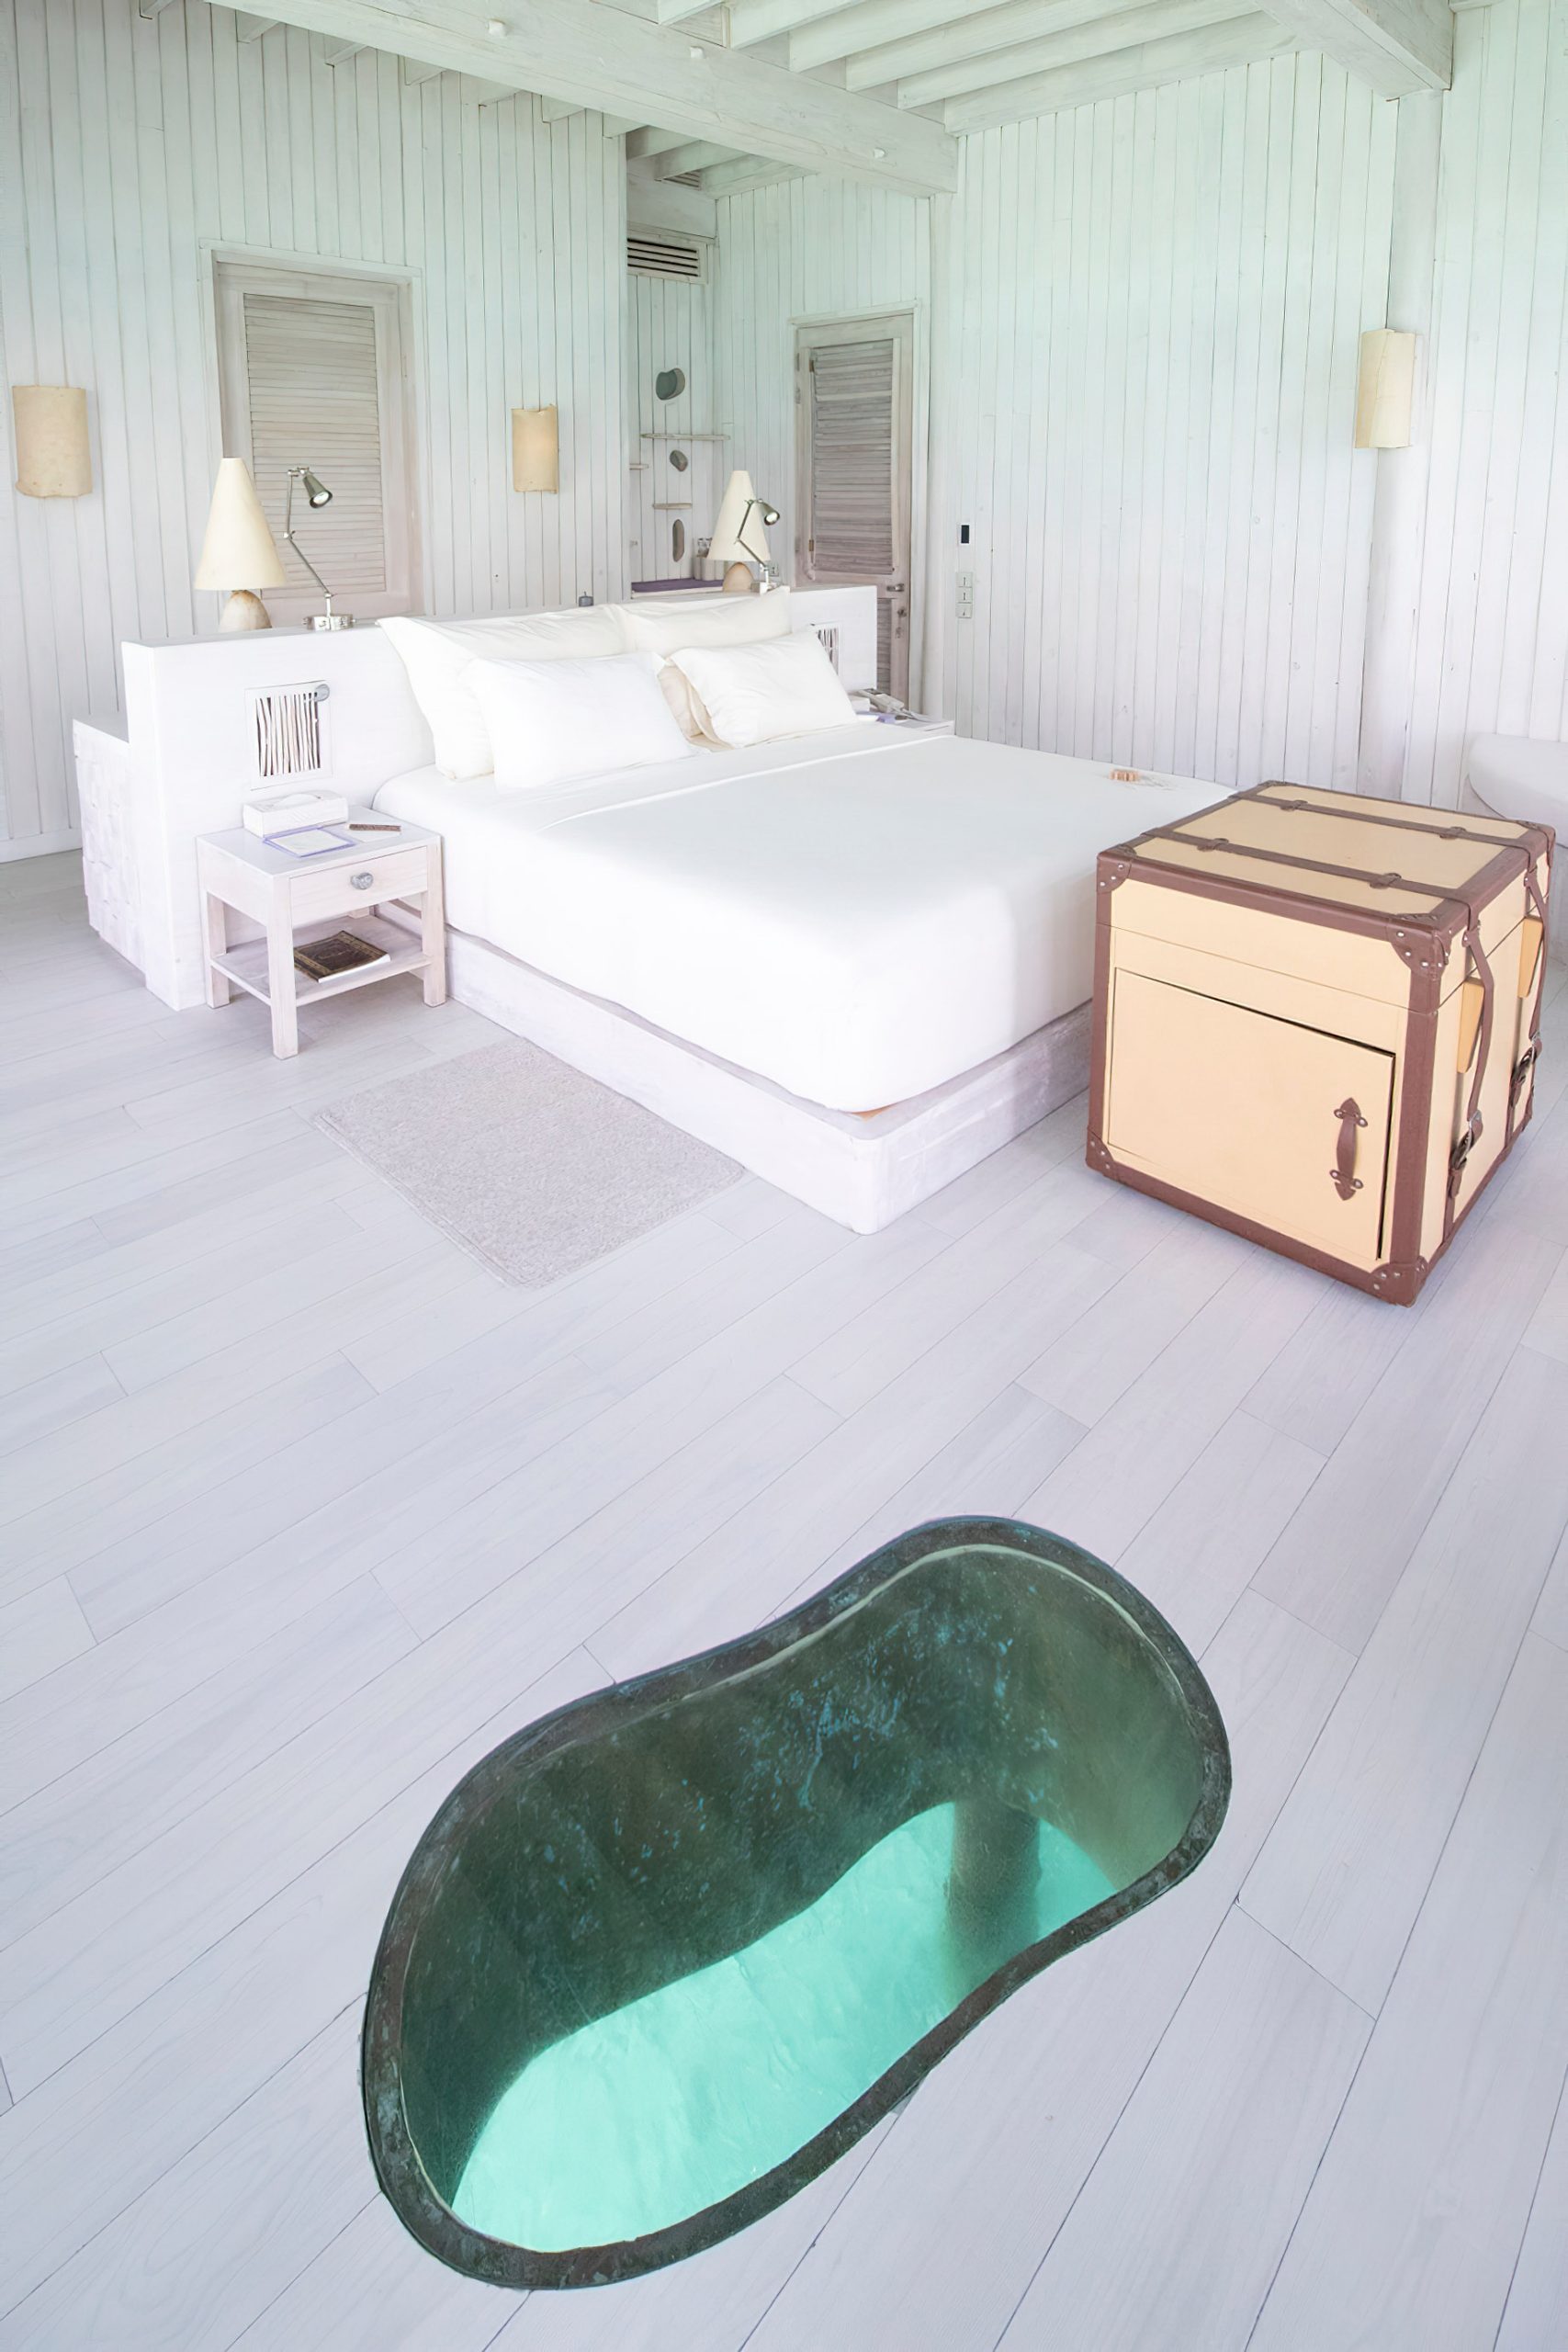 Soneva Jani Resort – Noonu Atoll, Medhufaru, Maldives – 4 Bedroom Water Reserve Villa Bedroom